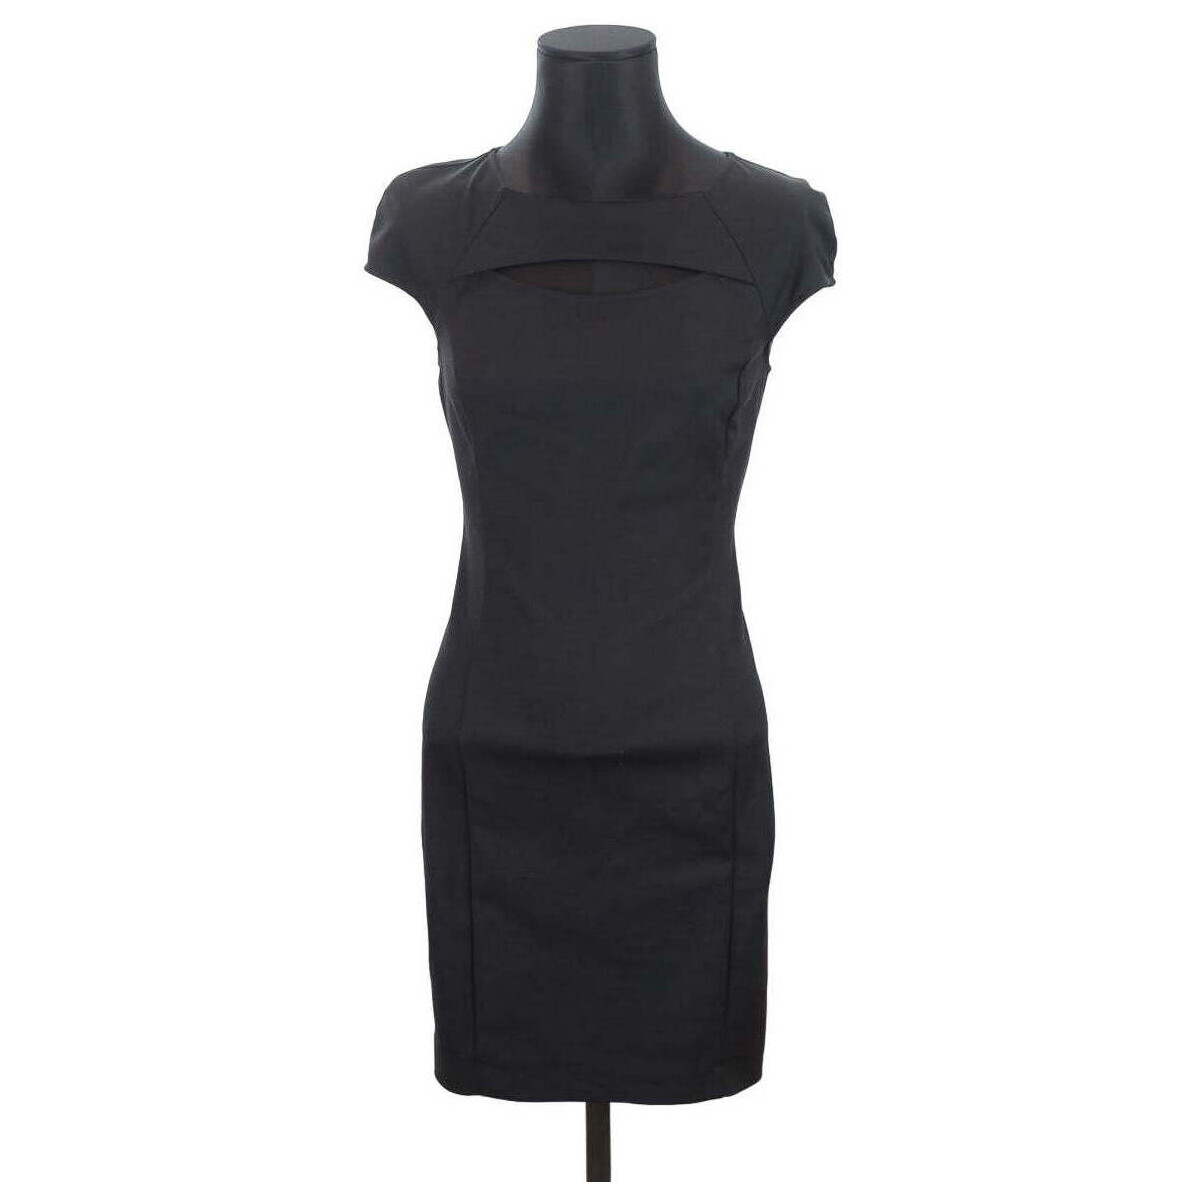 Vêtements Femme Utilisez au minimum 1 chiffre ou 1 caractère spécial Robe en coton Noir